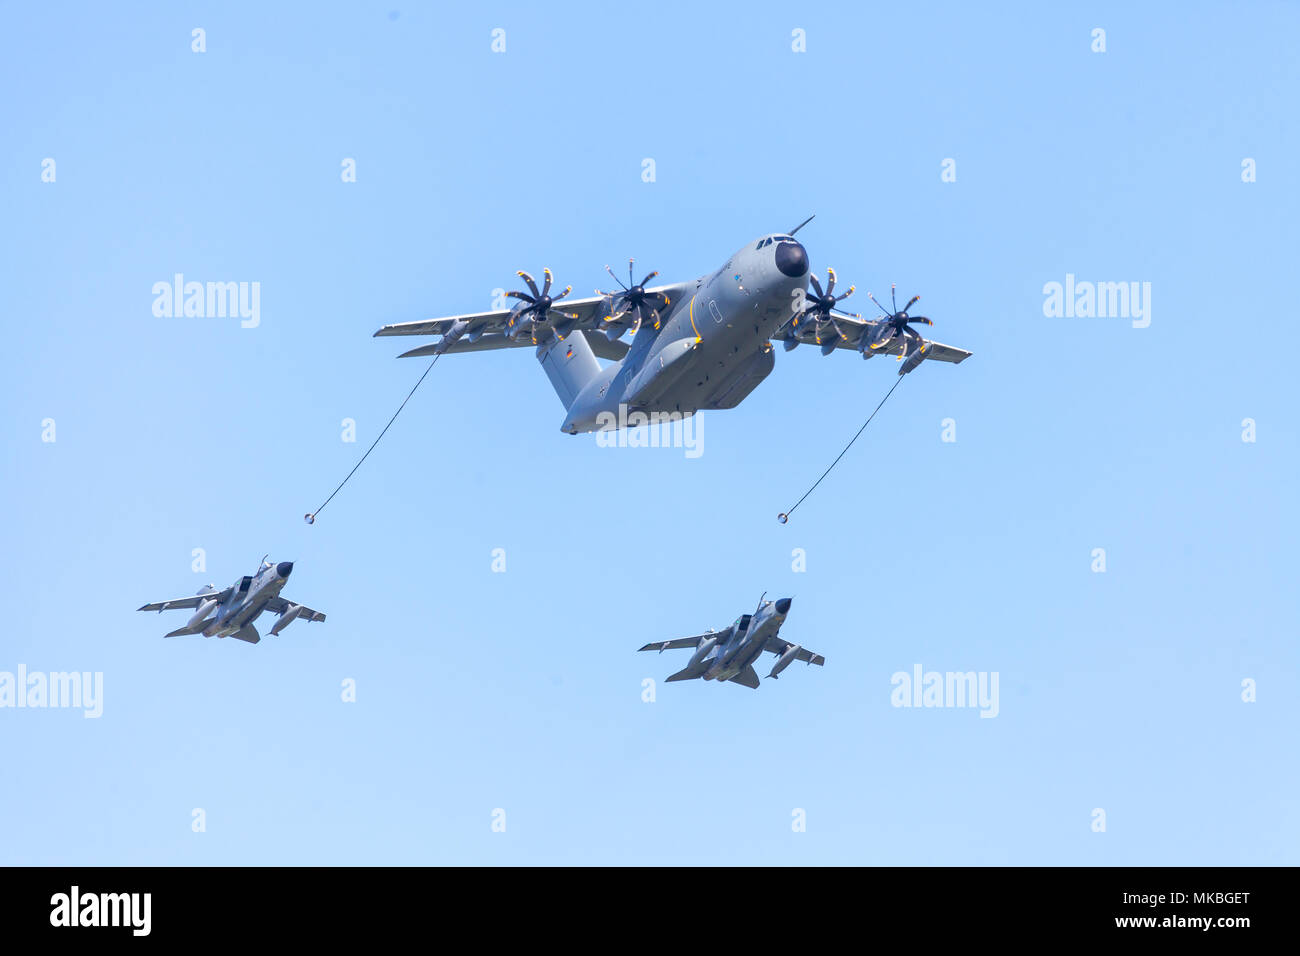 BERLIN / ALLEMAGNE - 28 avril 2018 : Airbus militaire A 400 M transports avion vole avec deux avions de combat multirôle Panavia Tornado à l'aérodrome Scho Banque D'Images